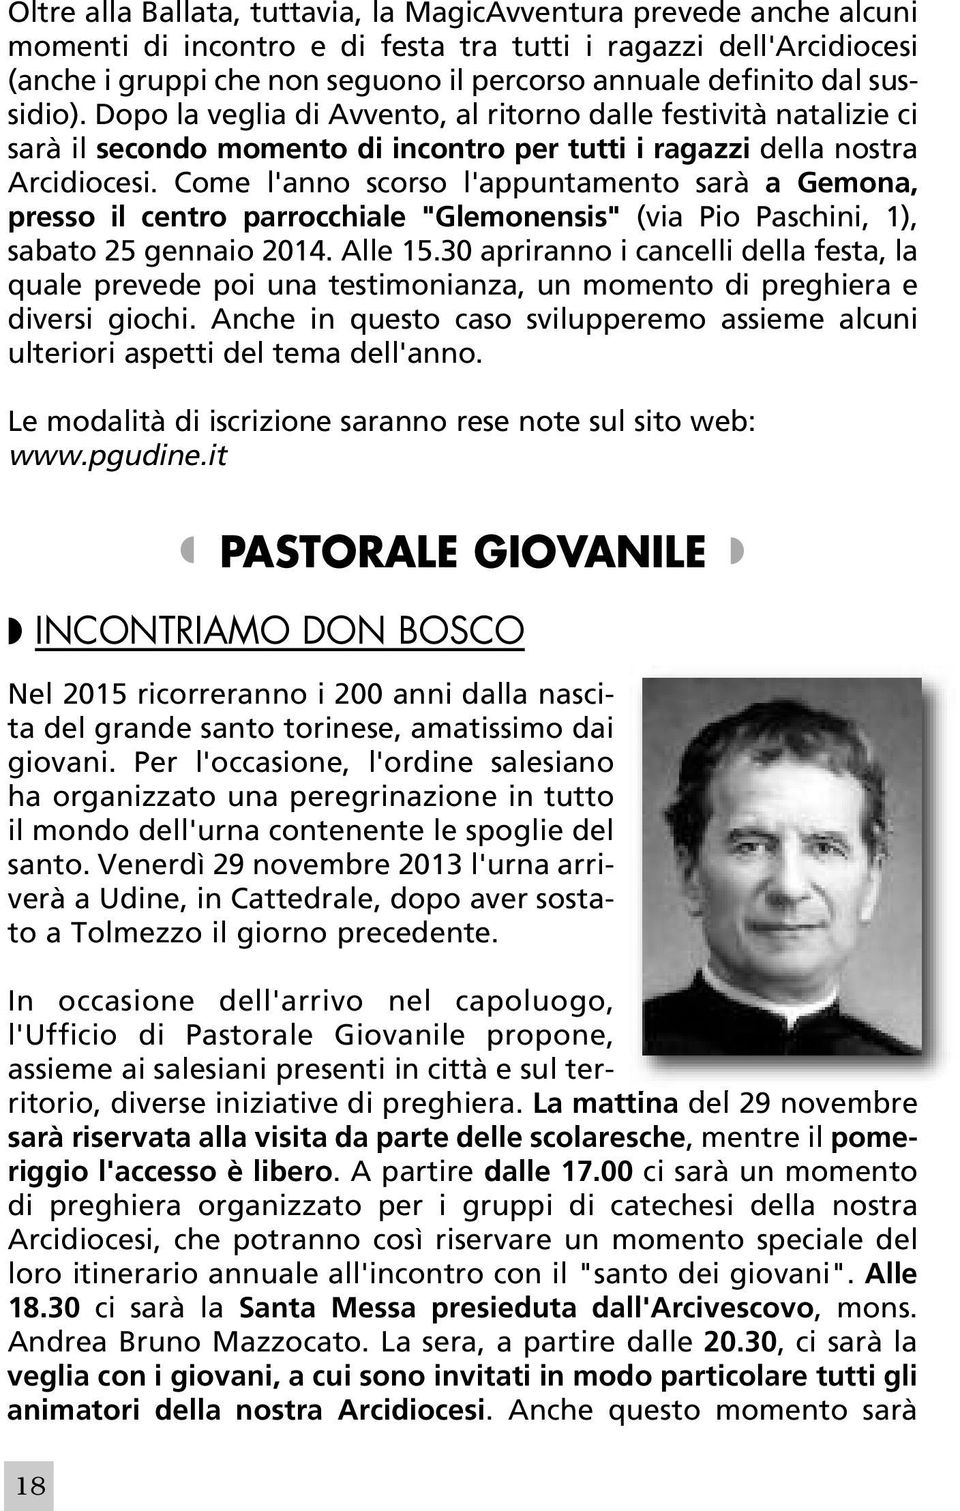 Come l'anno scorso l'appuntamento sarà a Gemona, presso il centro parrocchiale "Glemonensis" (via Pio Paschini, 1), sabato 25 gennaio 2014. Alle 15.